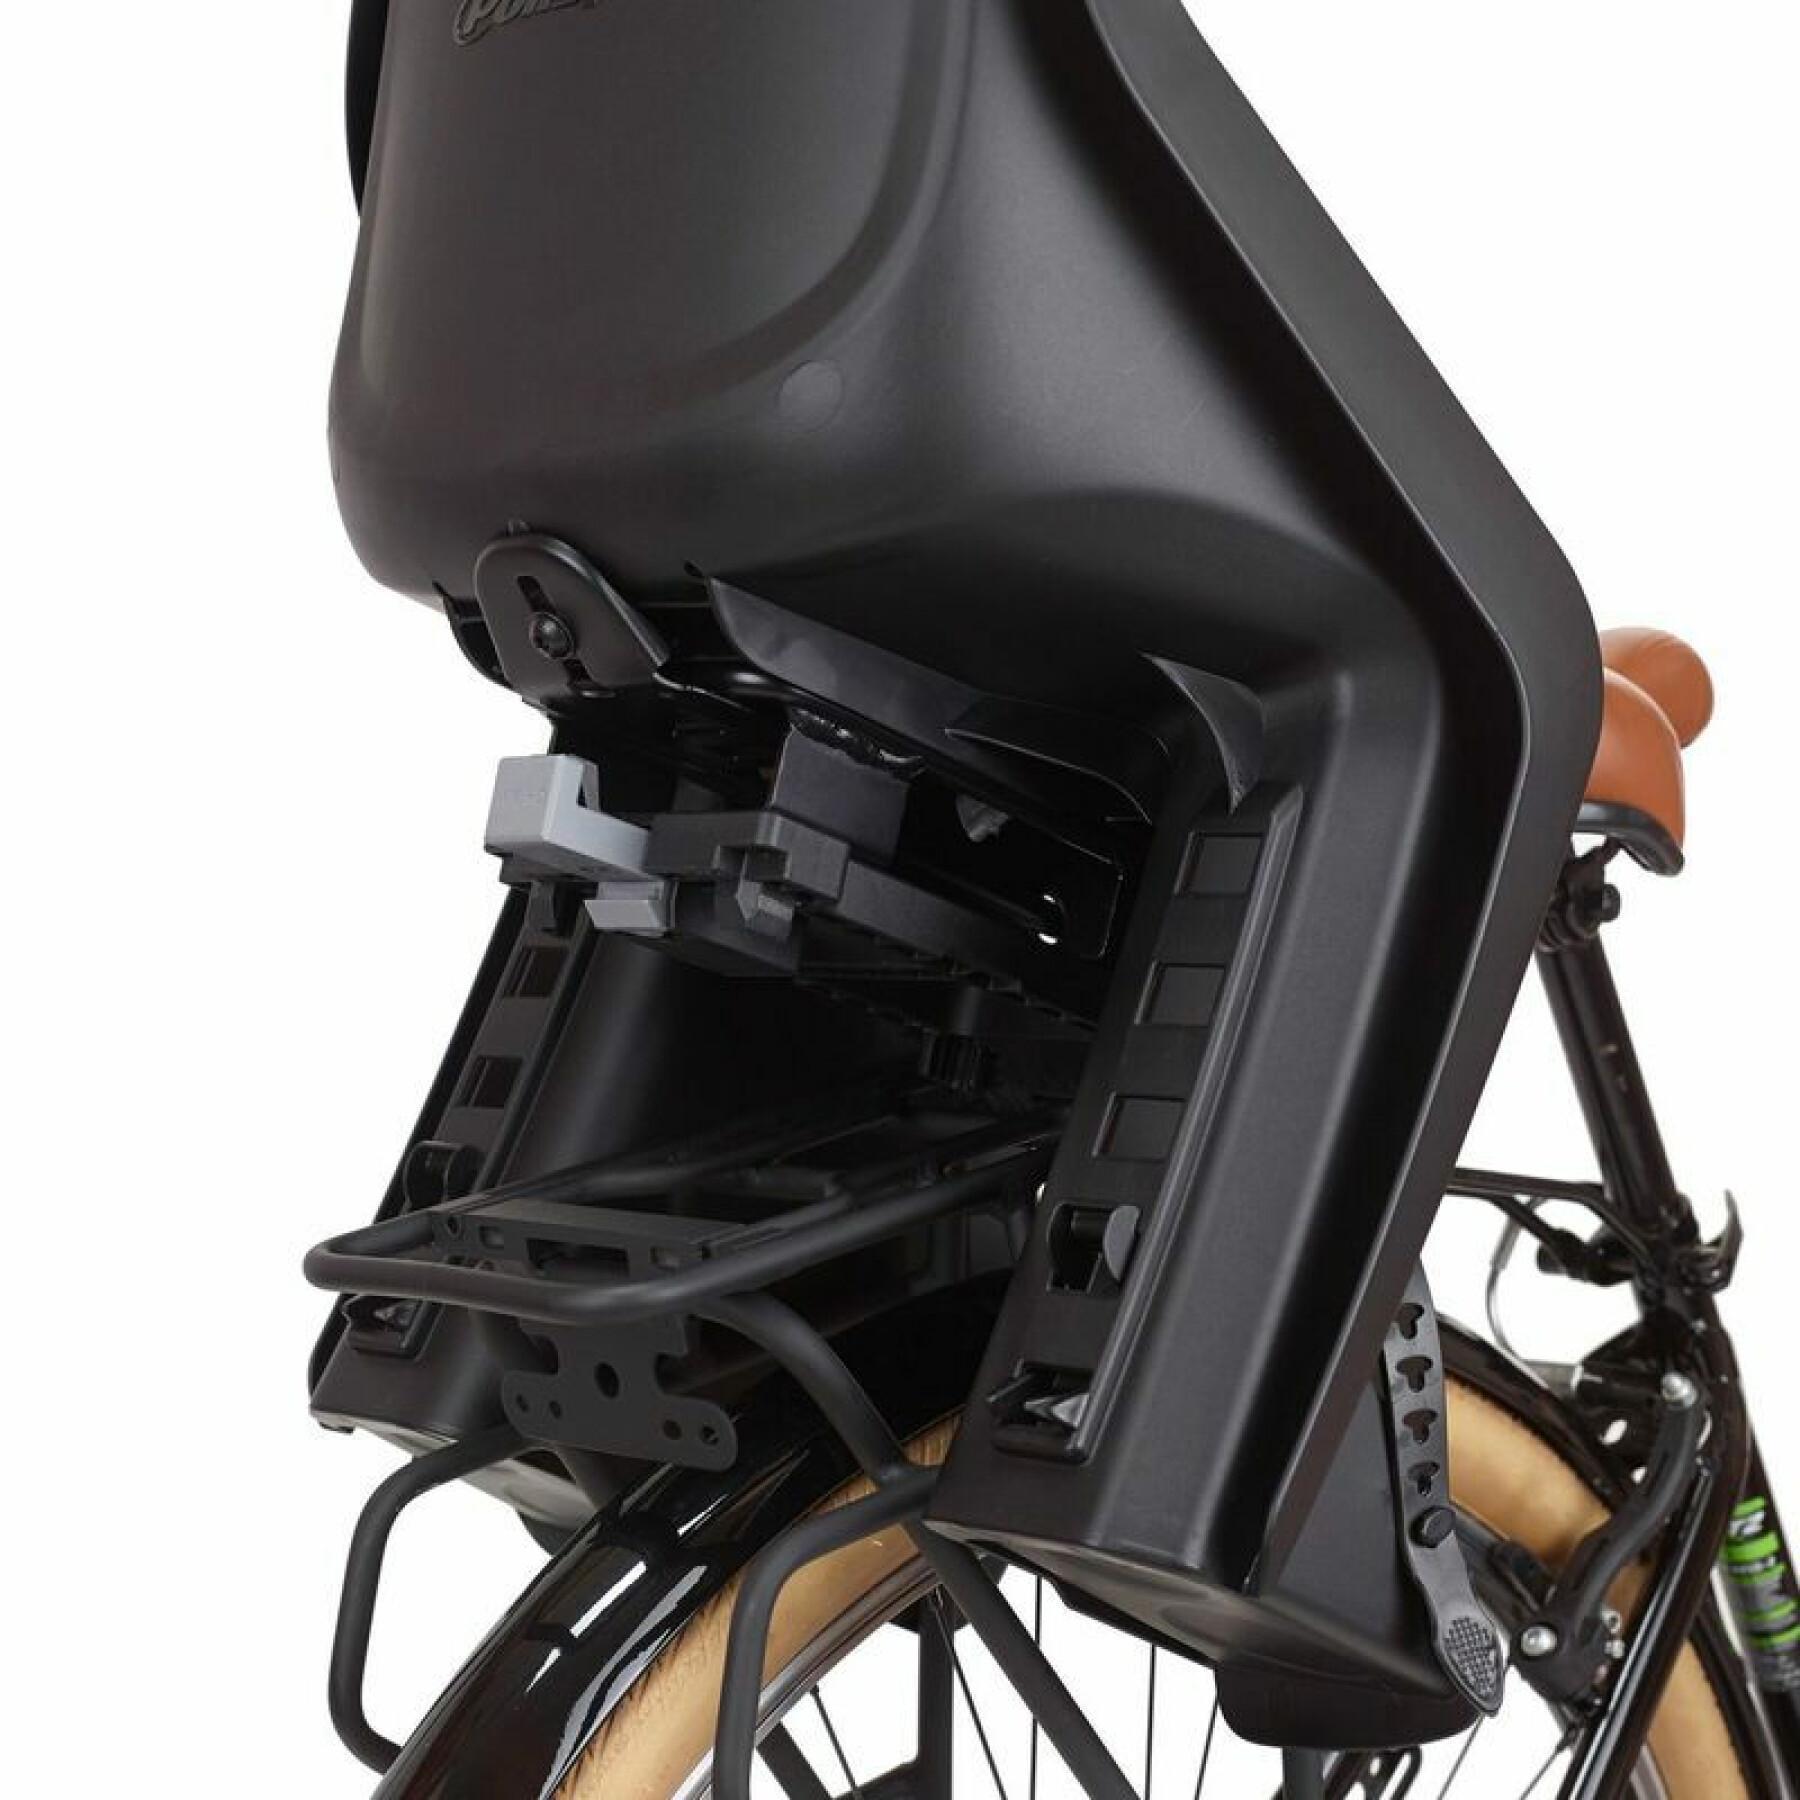 Asiento trasero de la bicicleta con fijación del portabebés Polisport Bubbly Maxi